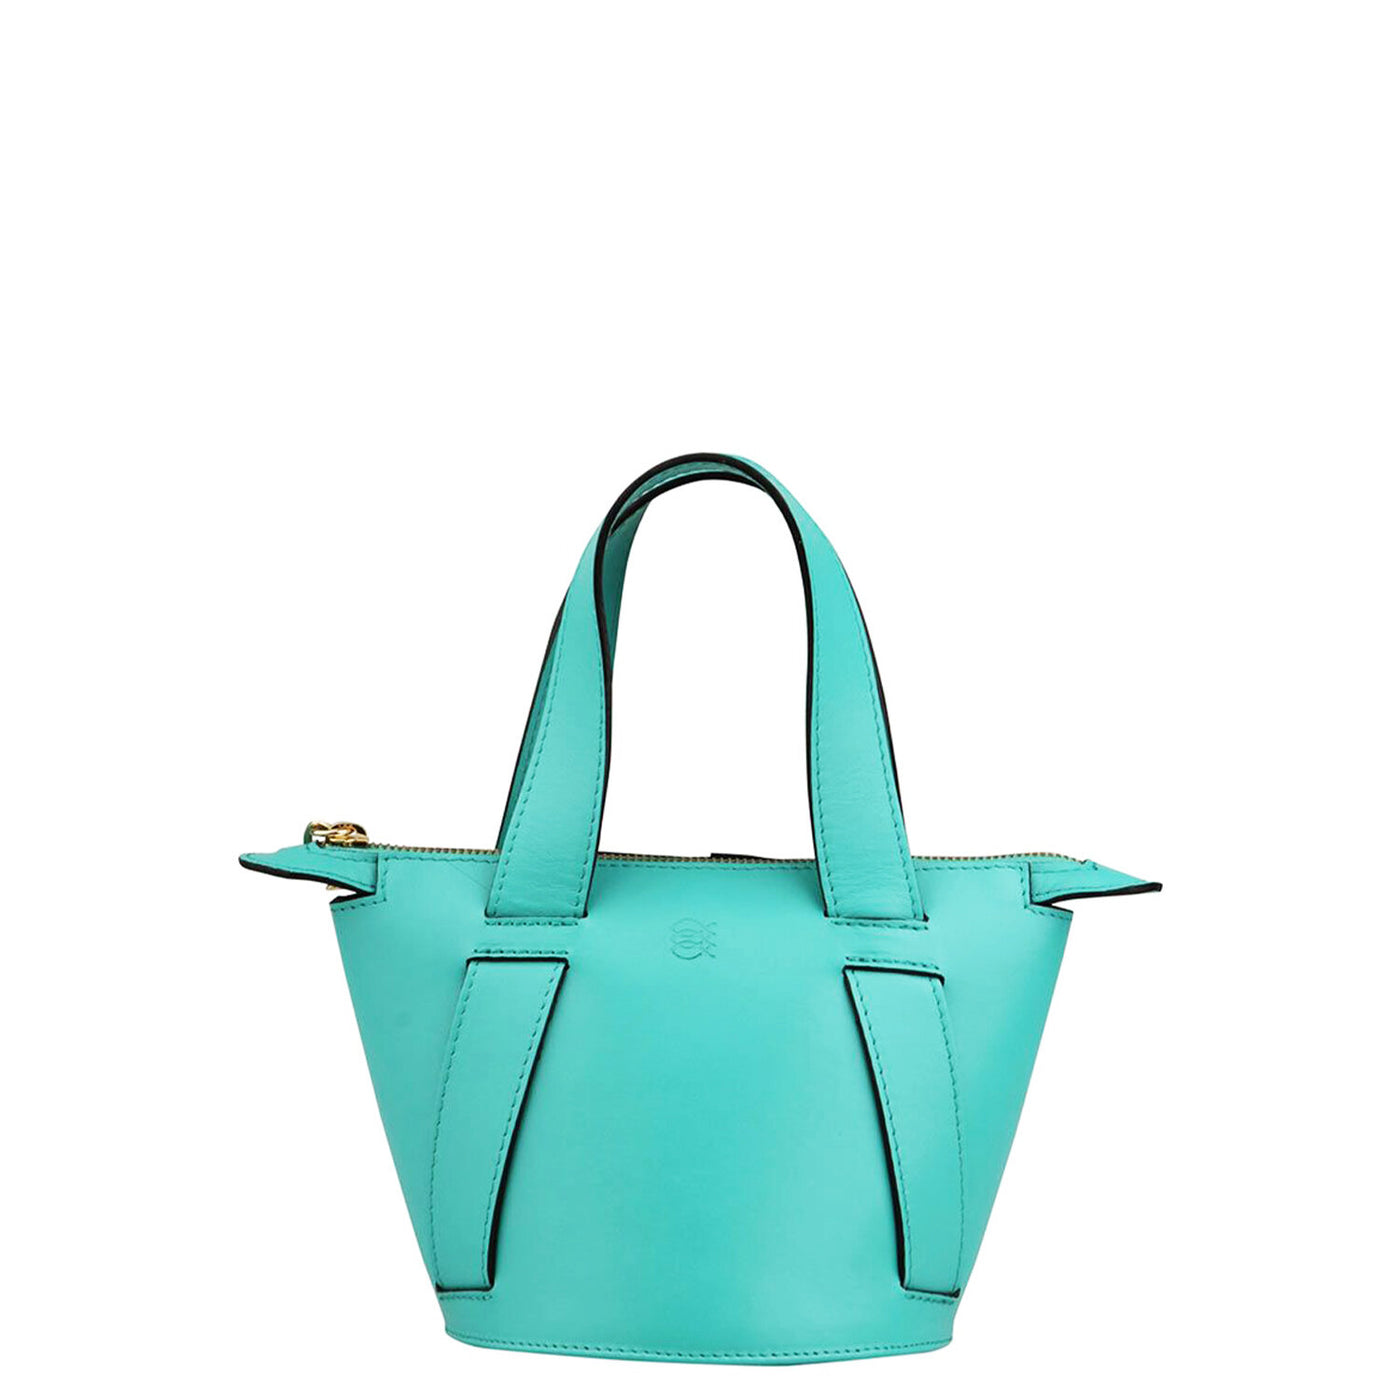 aqua leather bucket bag #color_aqua